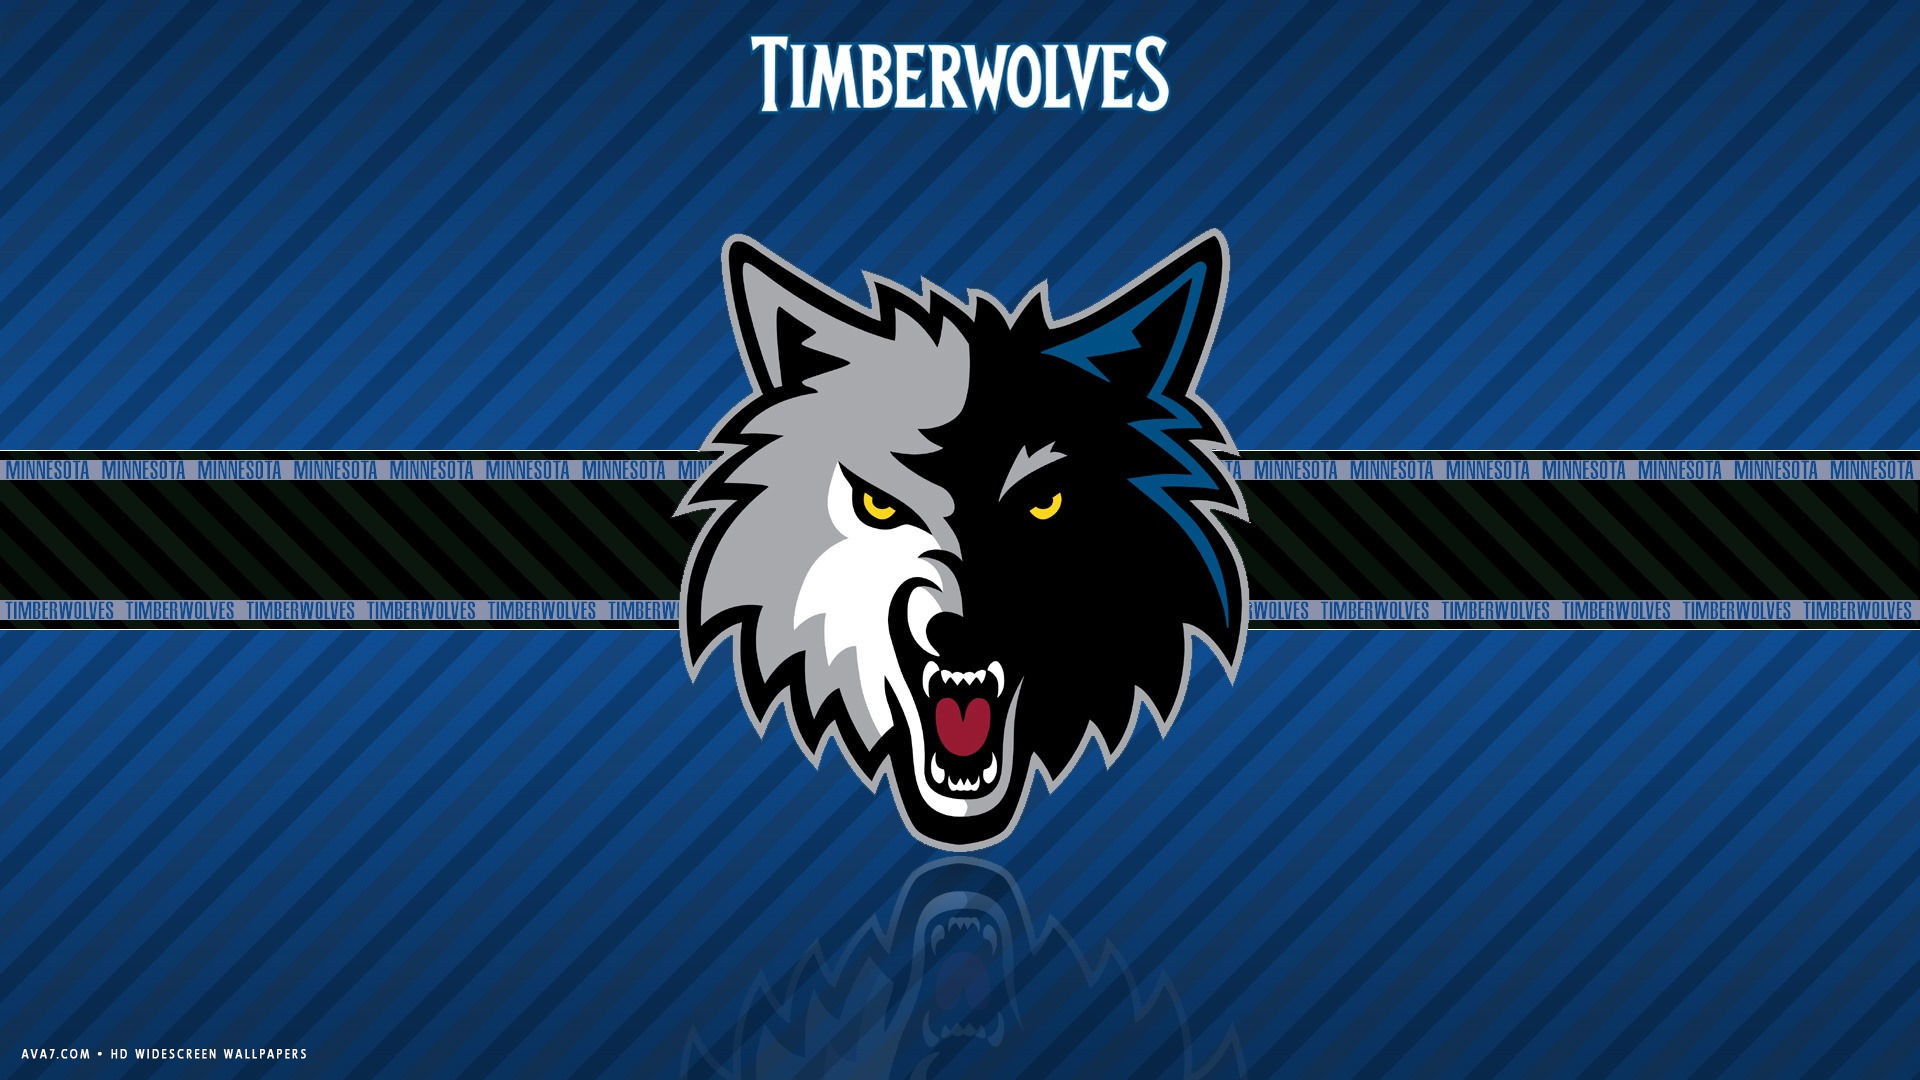 Minnesota timberwolves nba basketball team hd widescreen wallpaper